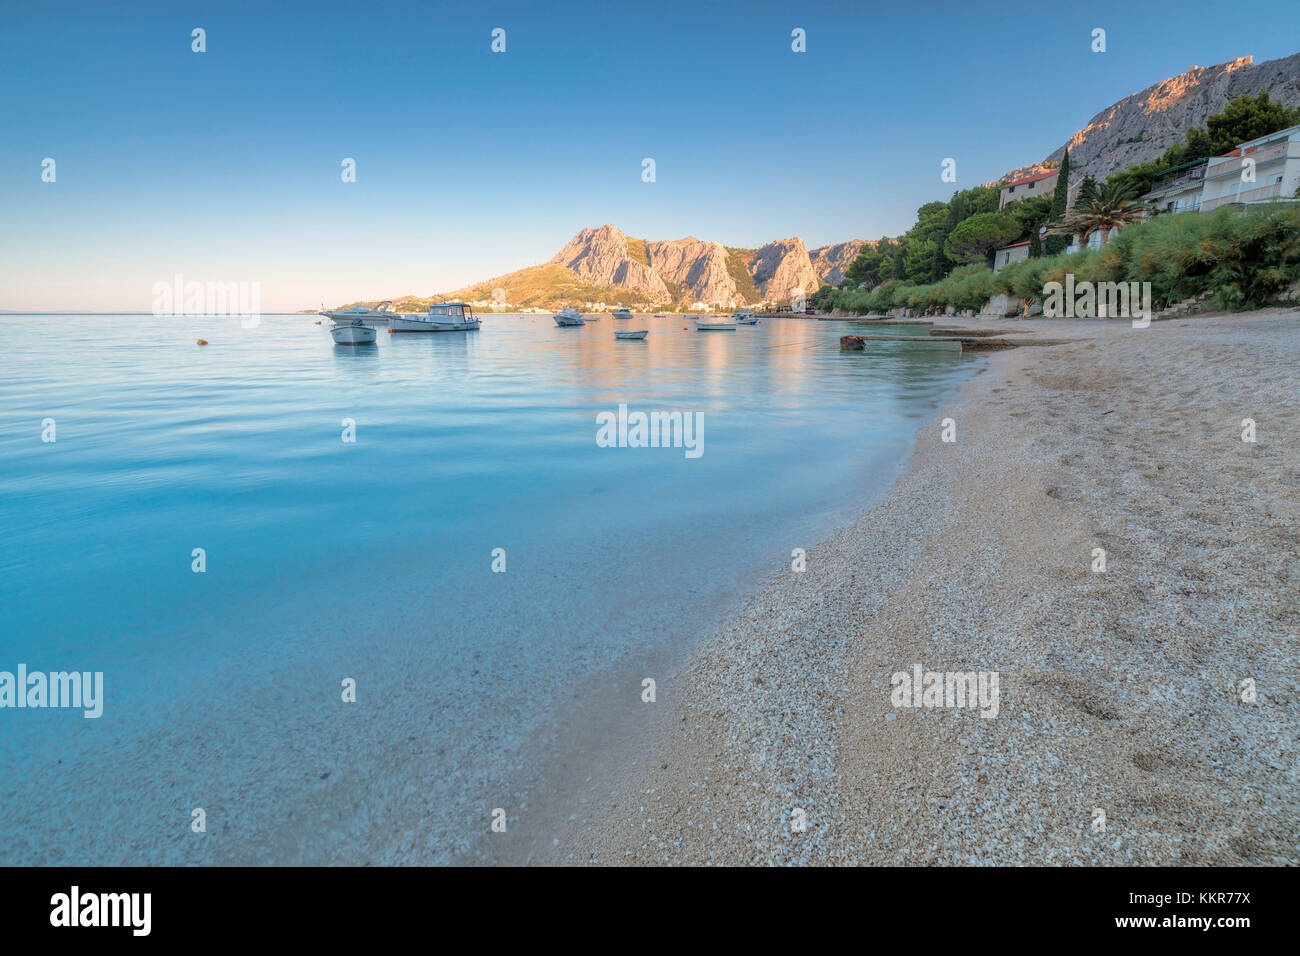 Beach in Omis, Dalmatia, Adriatic Coast, Croatia Stock Photo